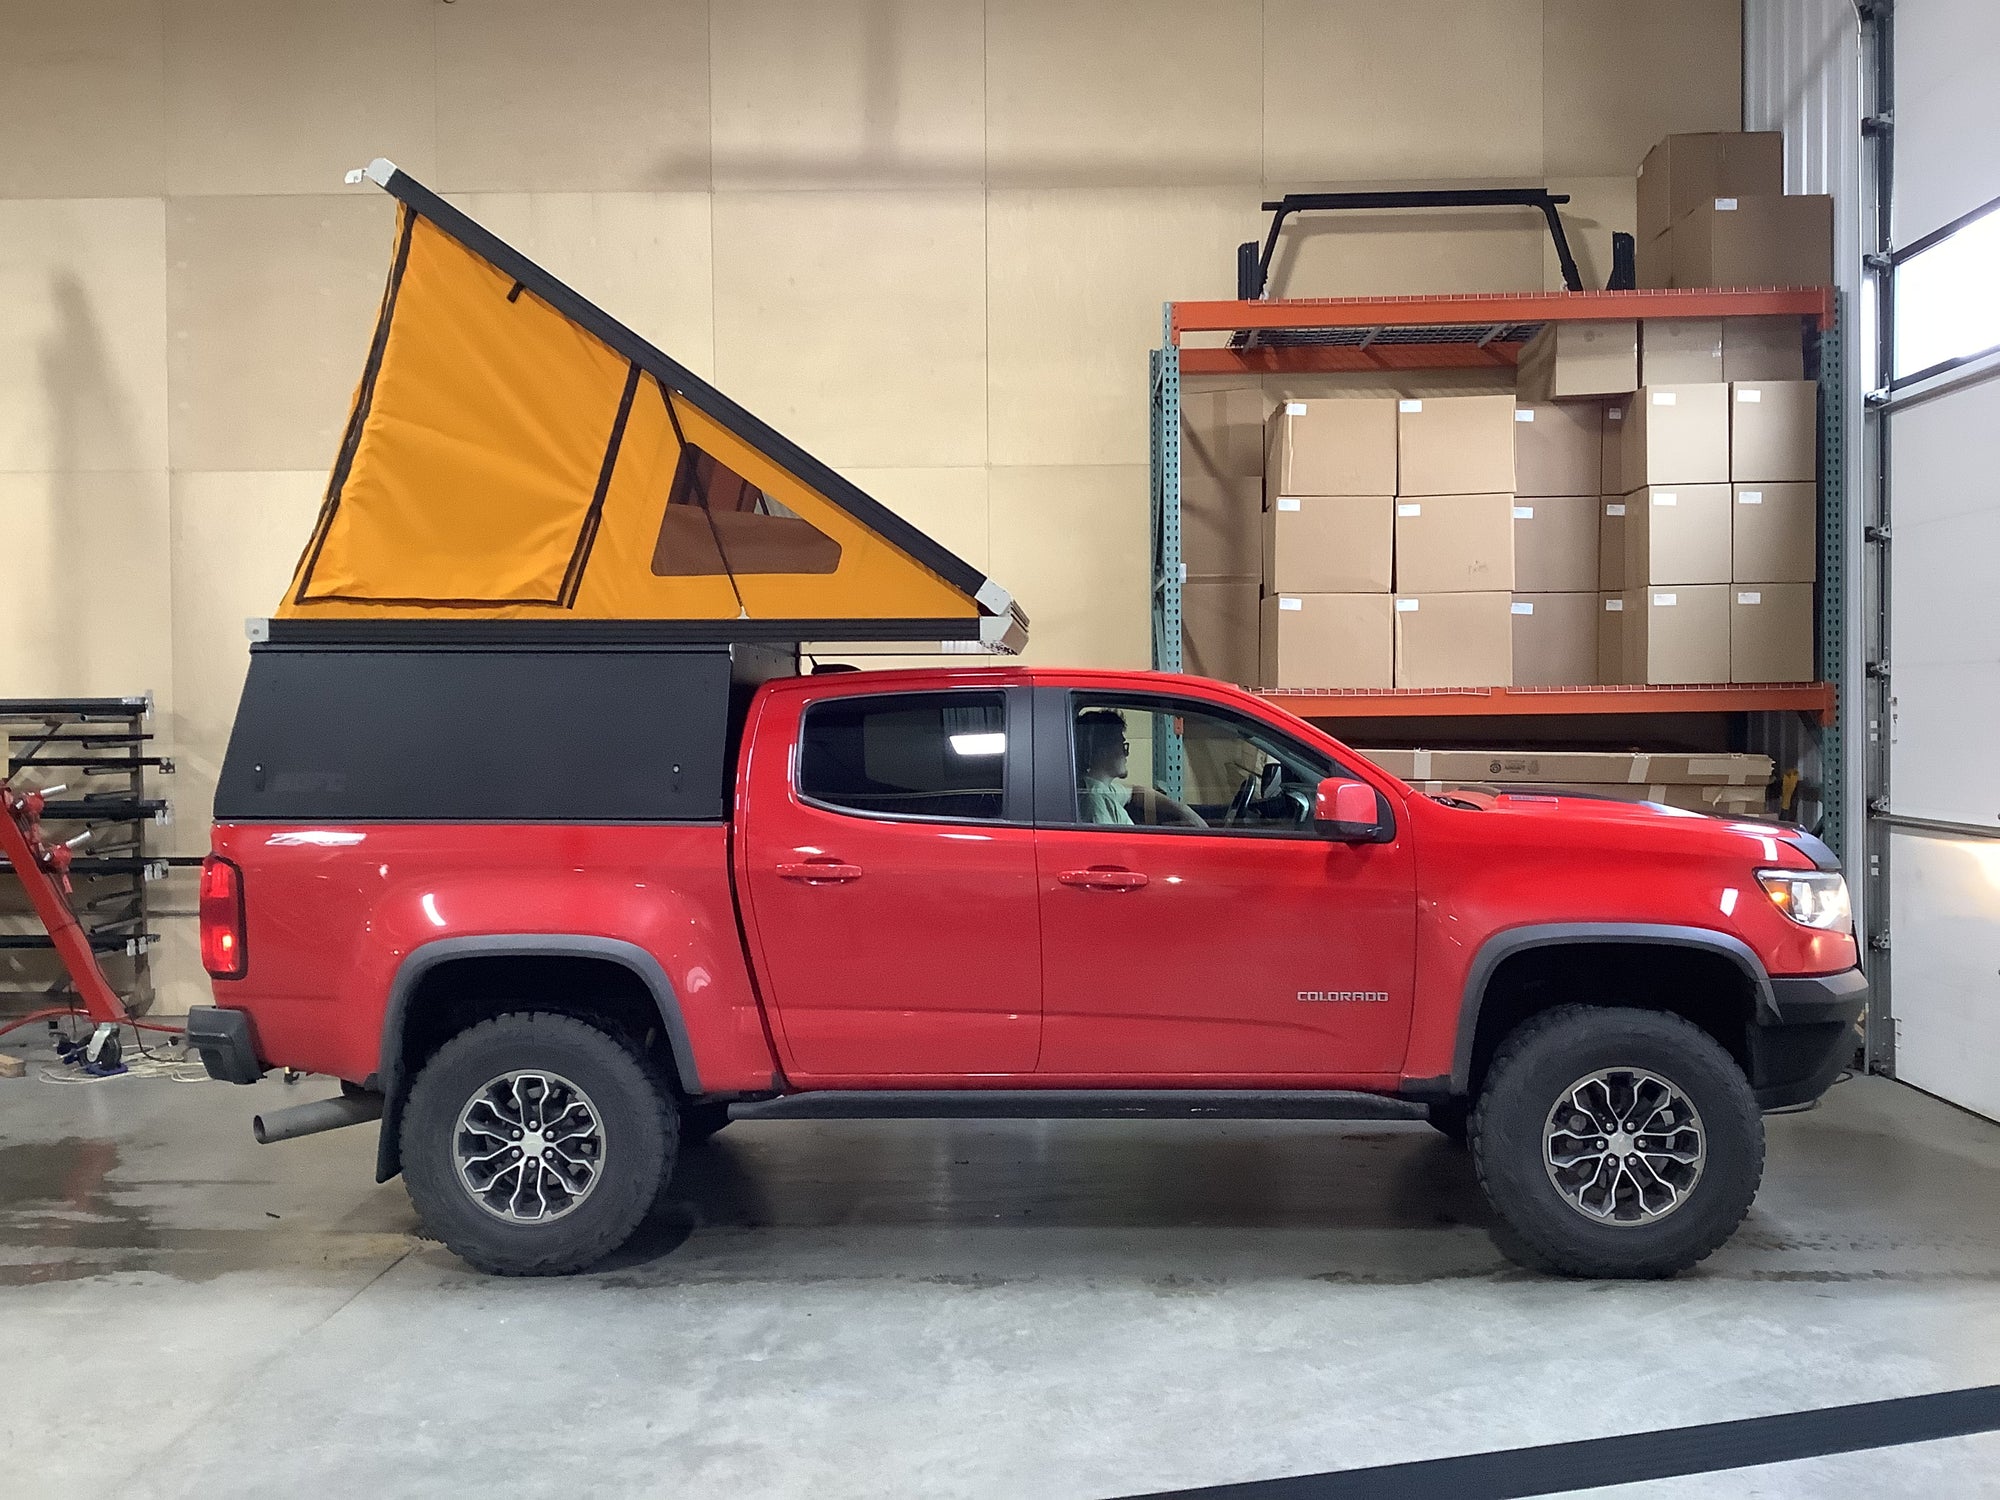 2018 Chevrolet Colorado Camper - Build #3417